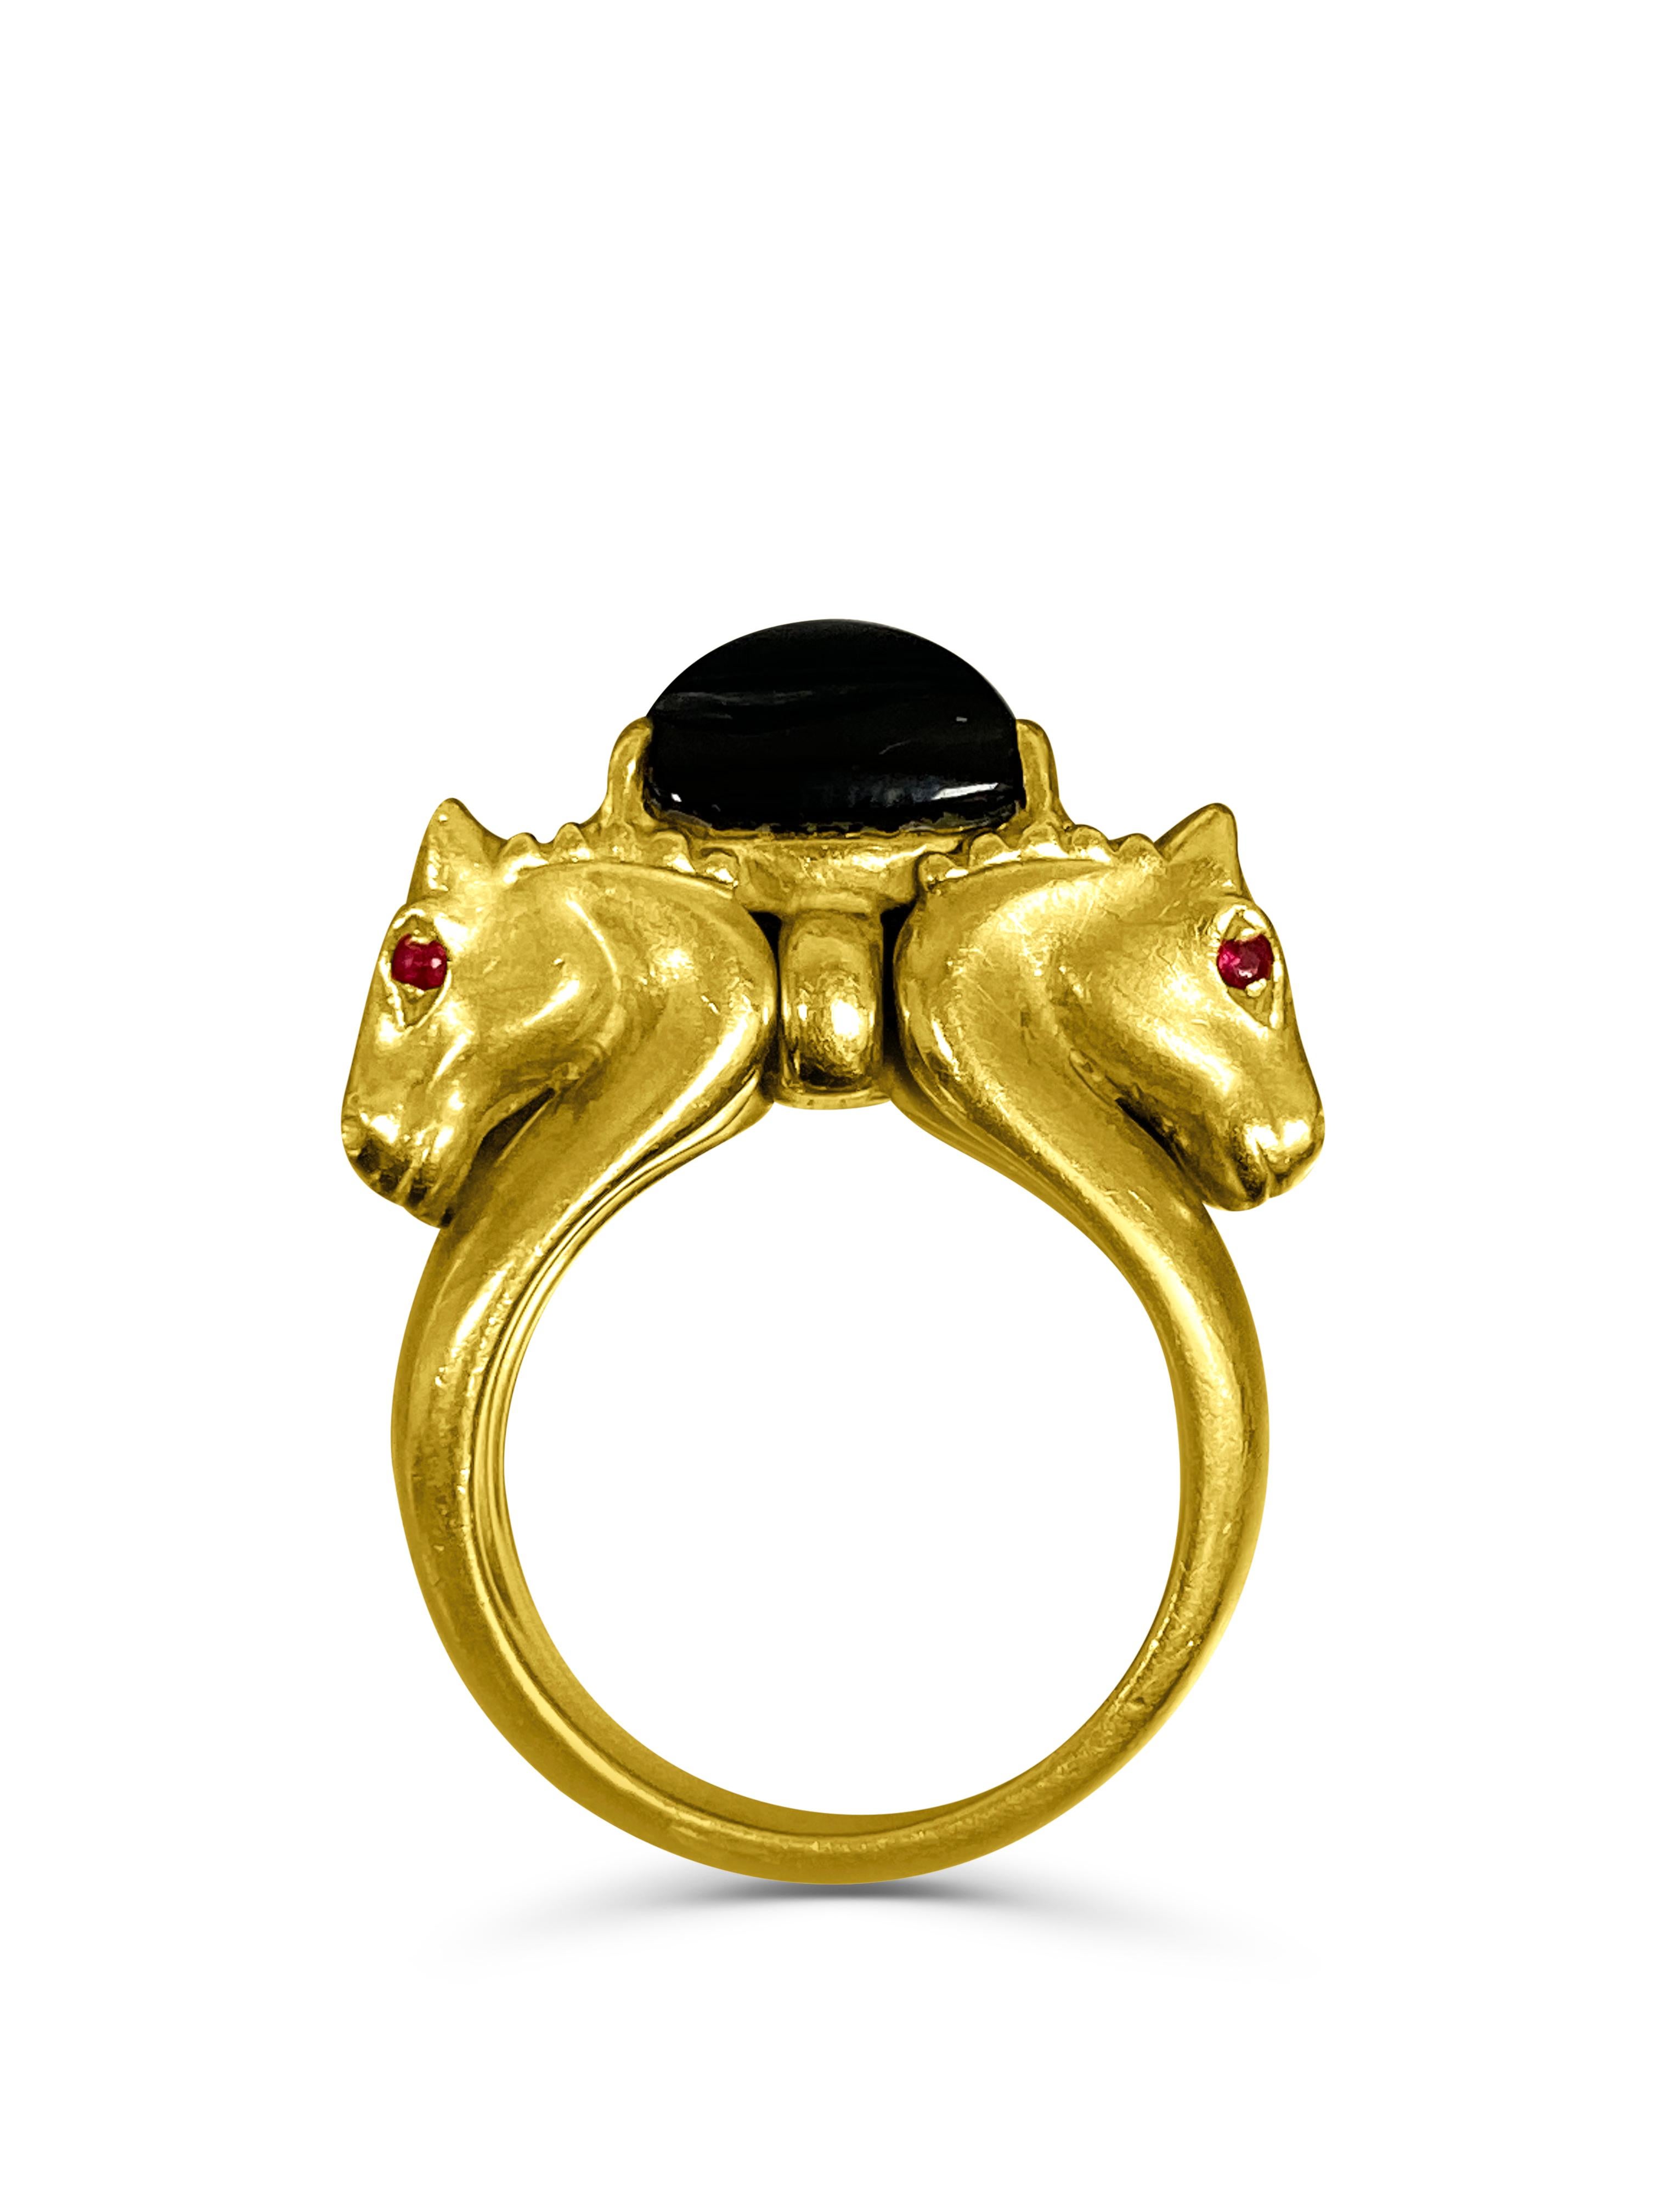 Pferdering aus 18 Karat Gelbgold mit einem schwarzen Onyx im Trillion-Schliff (6,55 Karat) in der Mitte. Jedes Pferdeauge ist mit natürlichen Rubinen besetzt, insgesamt sind es 8 Rubine. 

✔ Natürlicher schwarzer Onyx und Rubine
✔ Gold Karat: 18K 
✔